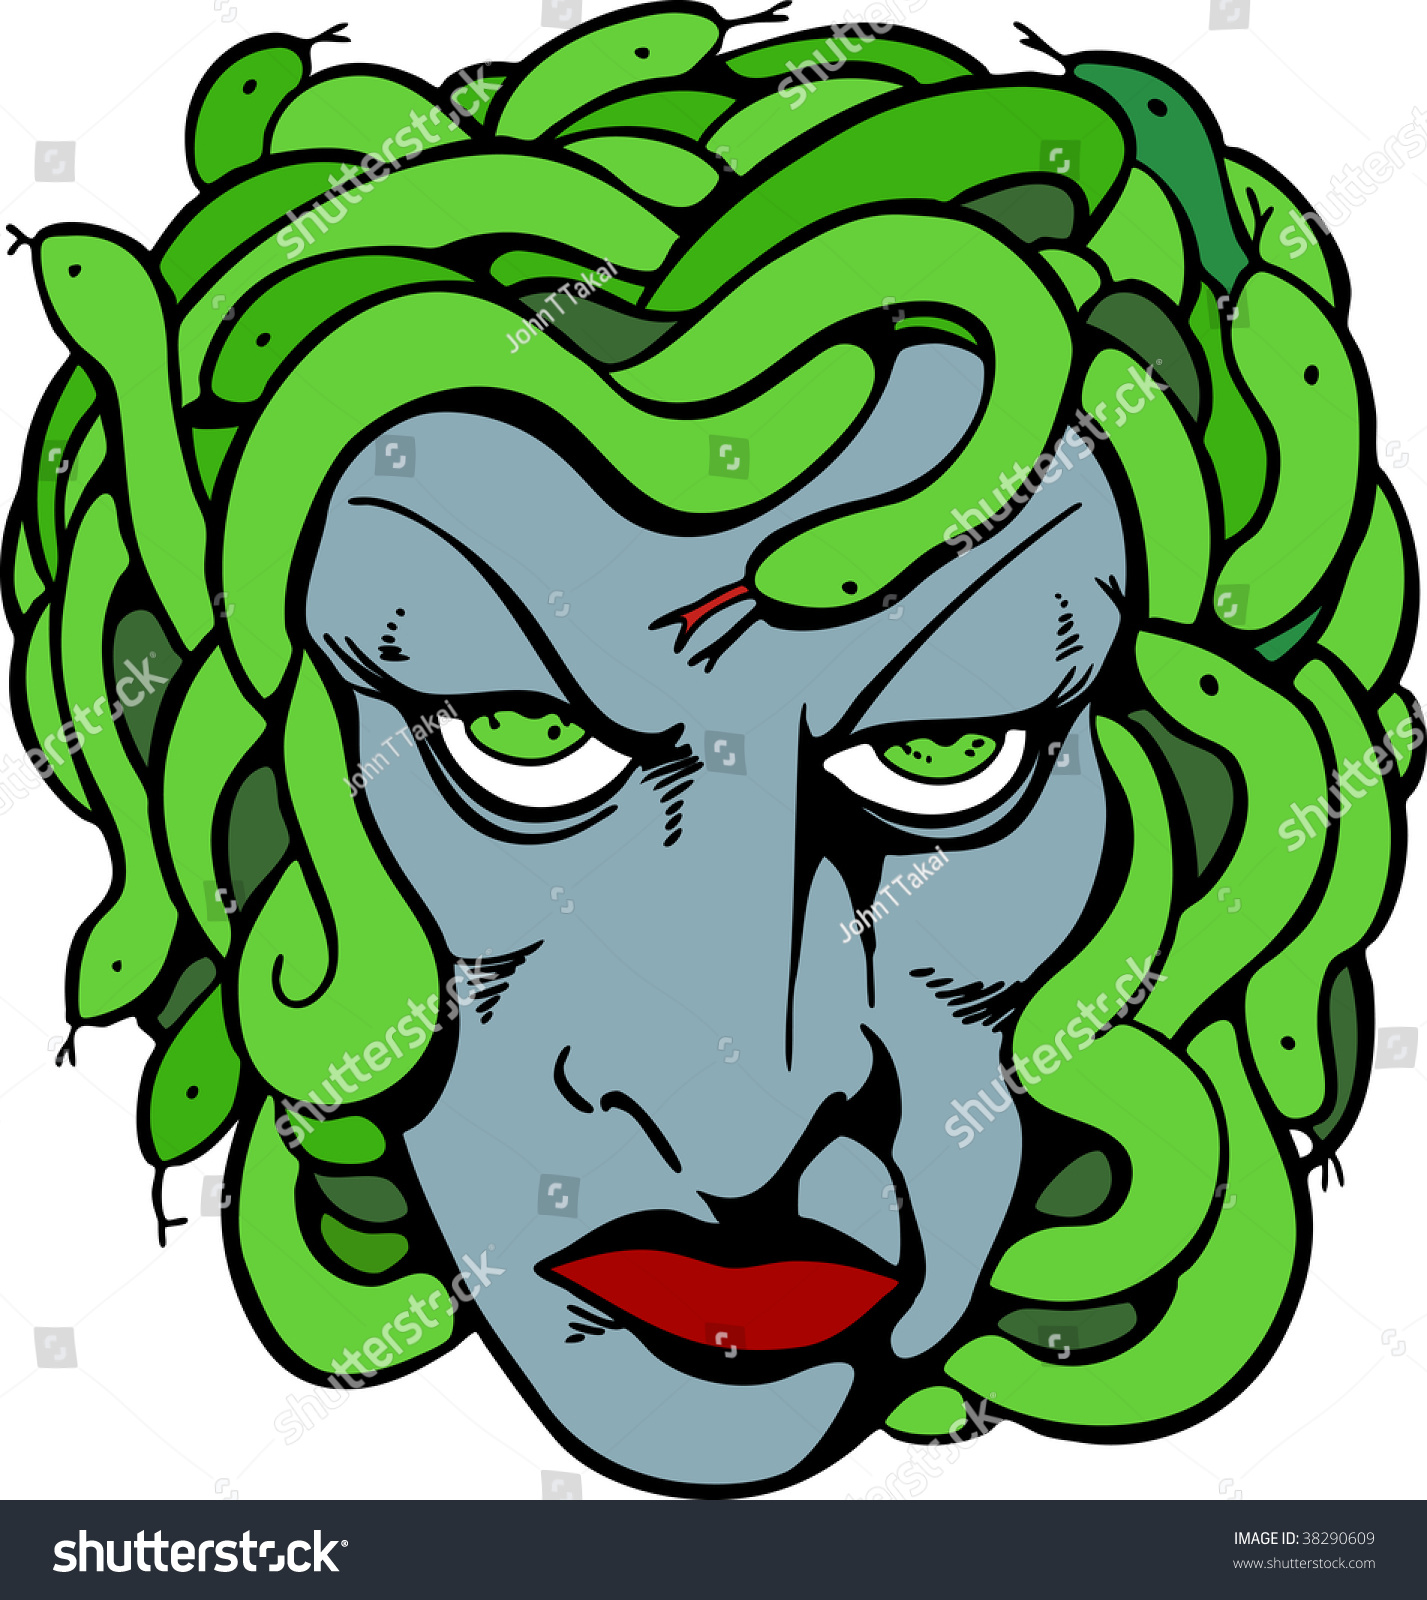 Mythical Medusa Head Drawing Stok Vektör (Telifsiz) 38290609 Shutterstock.